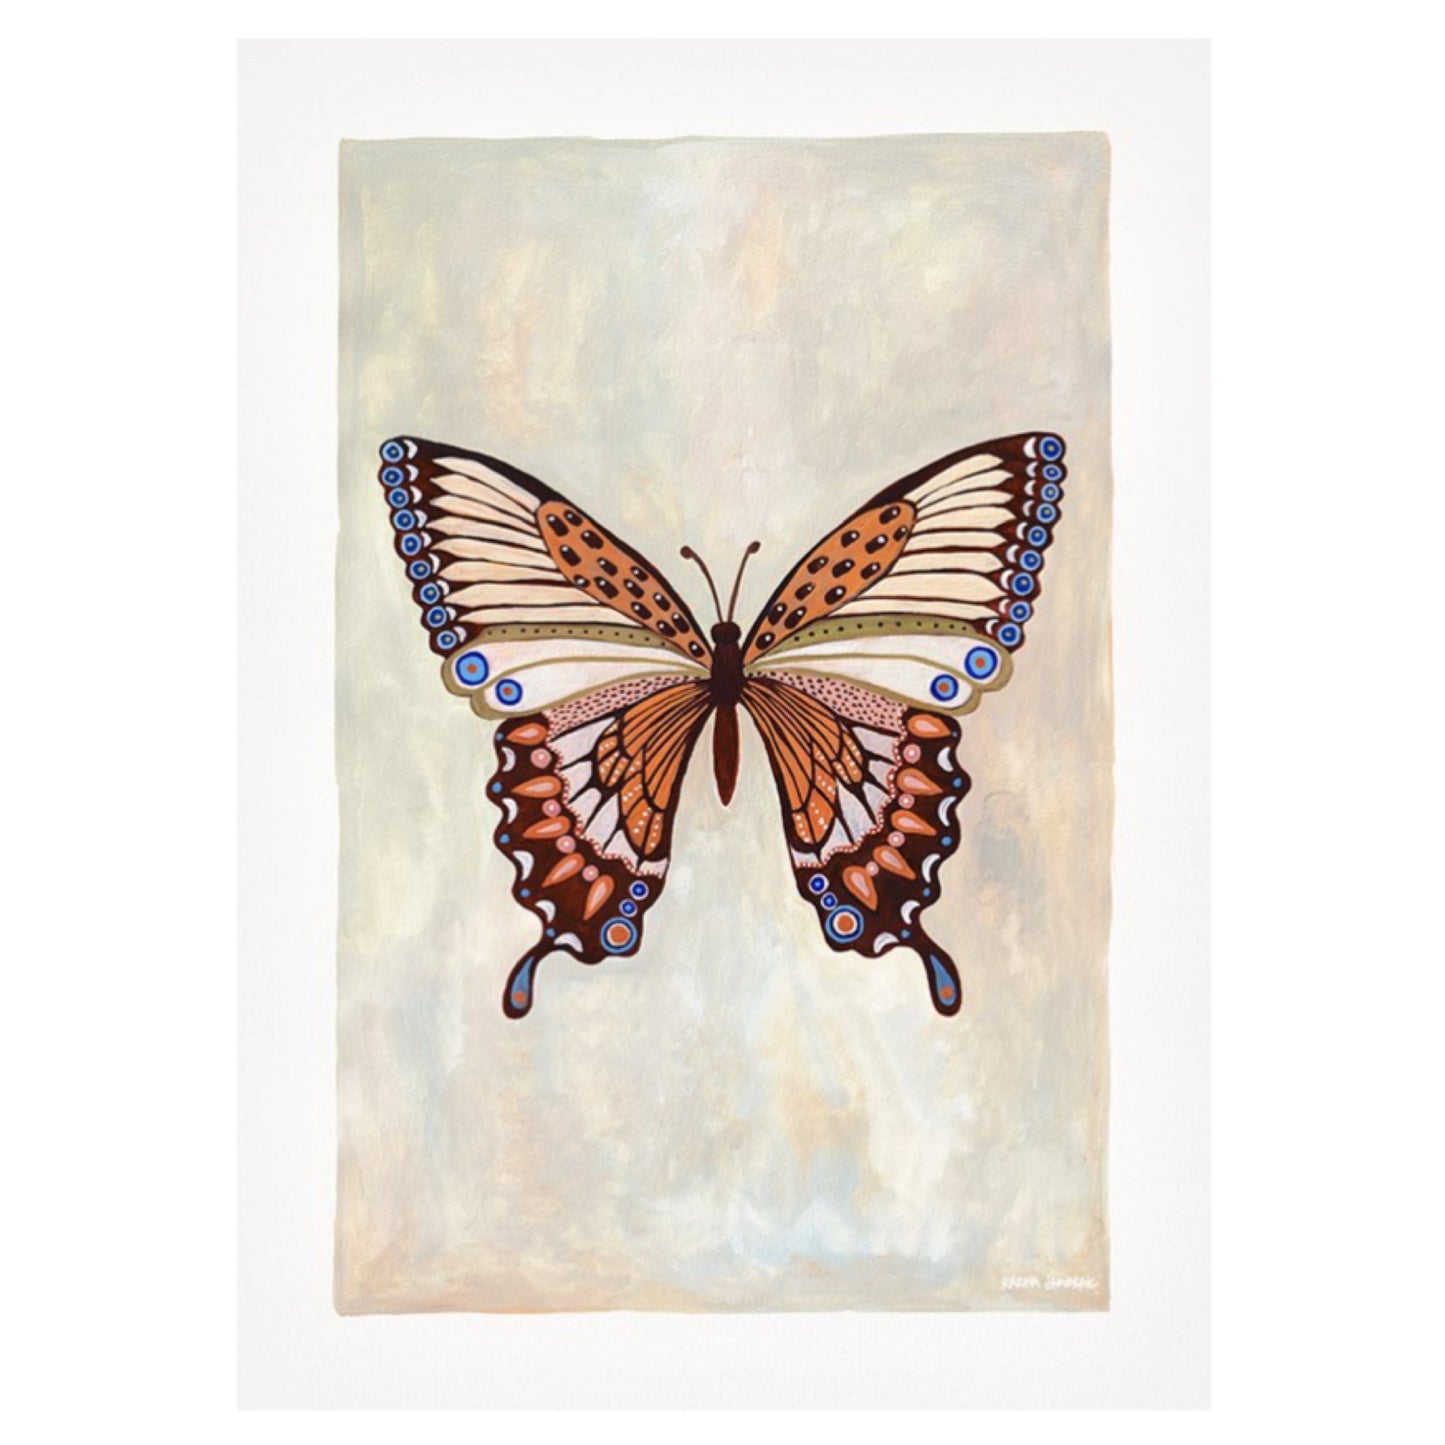 【karina jambrak art】new beginnings butterfly